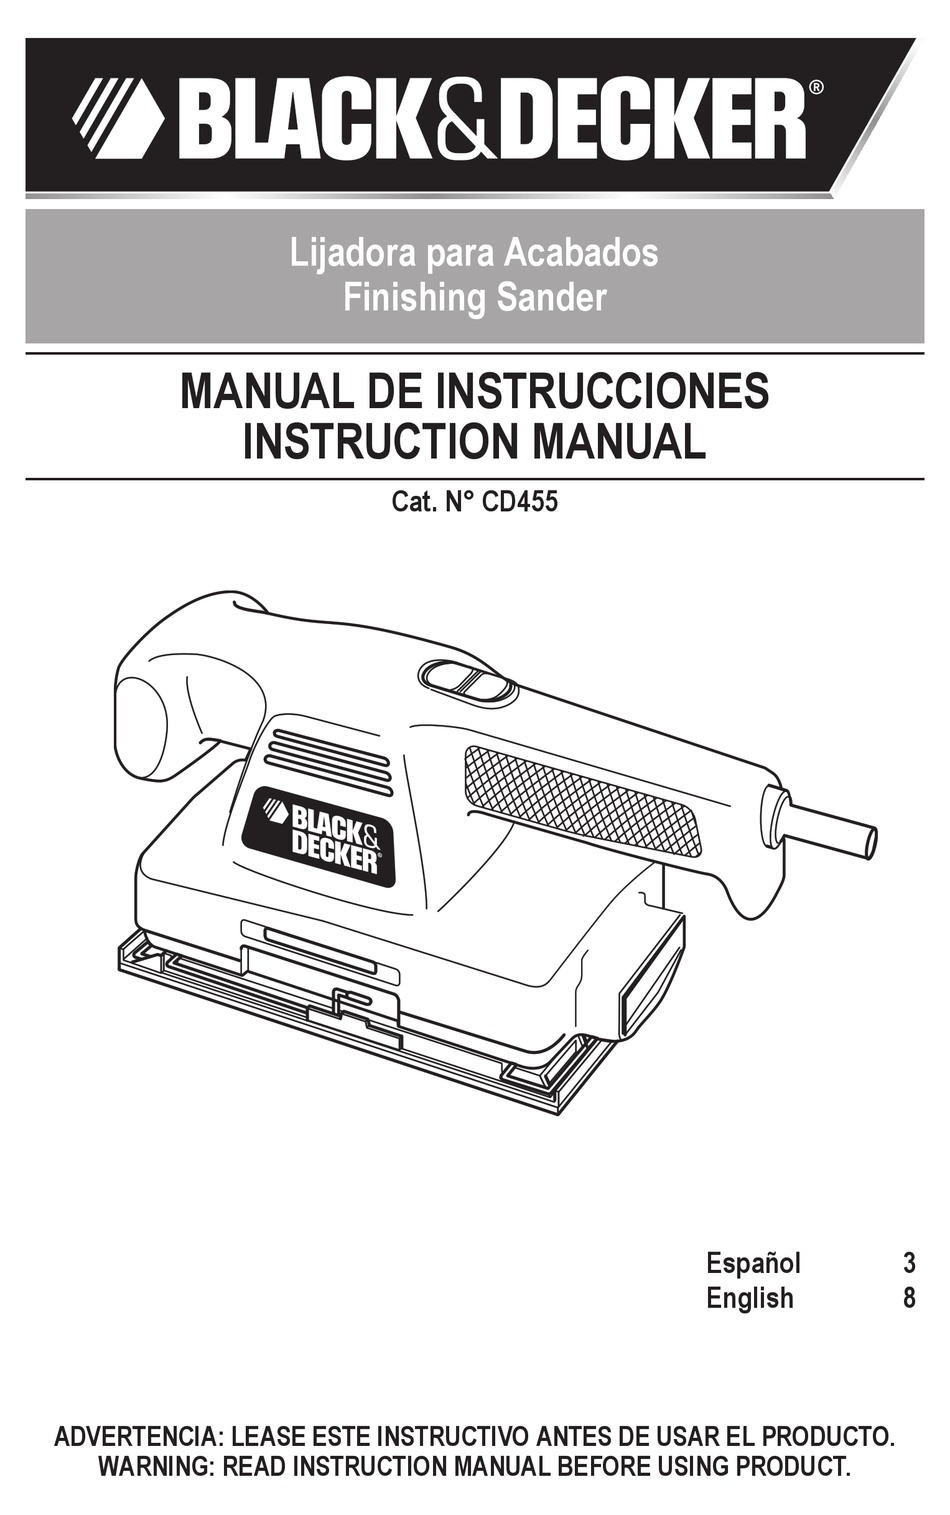 BLACK DECKER BLACK + DECKER Lijadora Manual de instrucciones